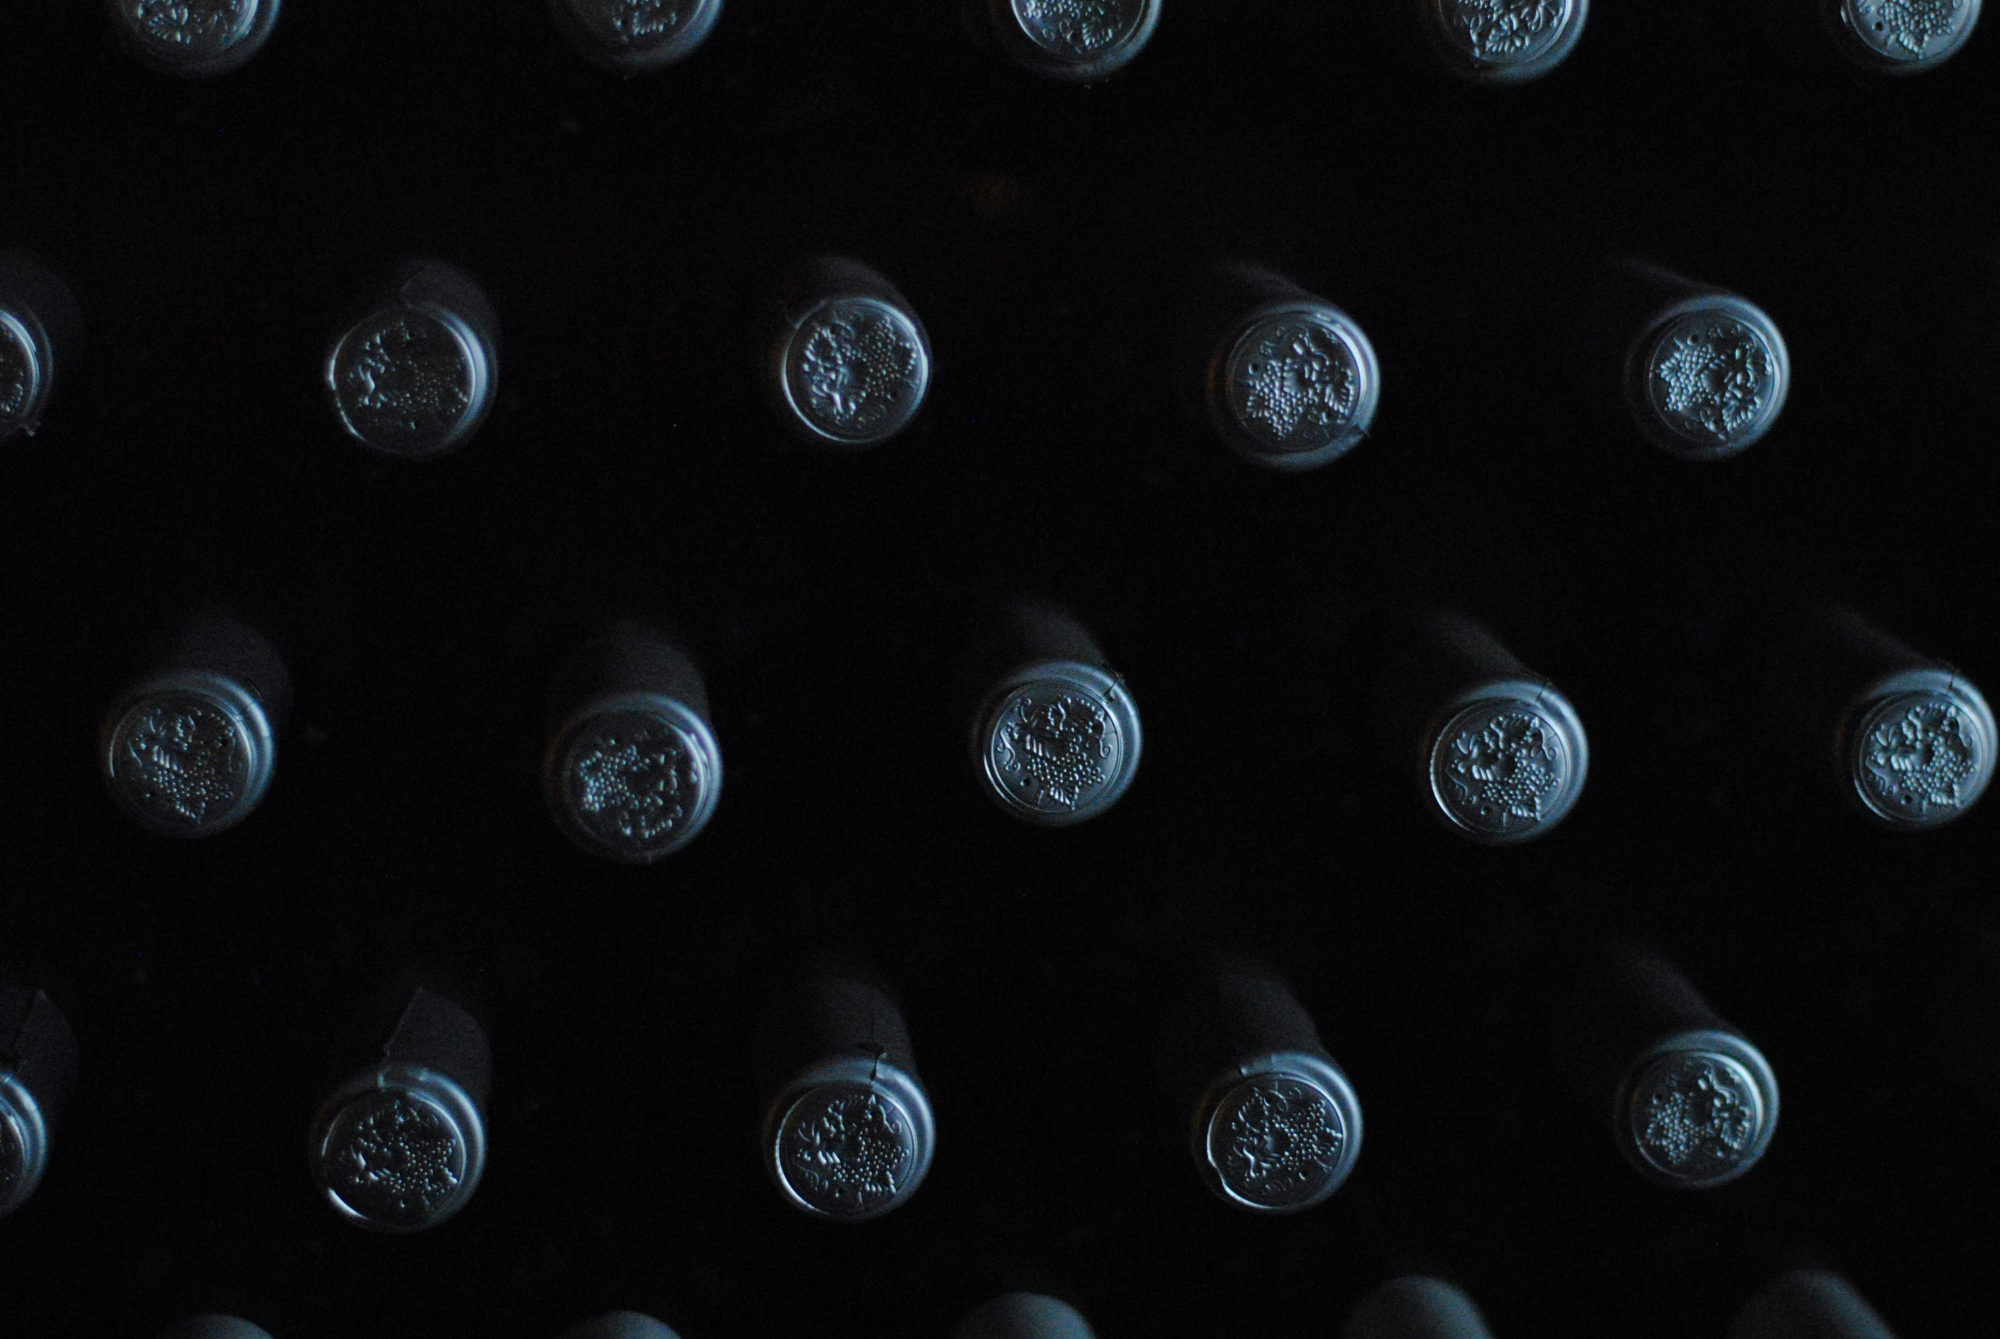 découvrez l'univers du vin de xérès avec notre sélection de délicieux vins de xérès, aussi connus sous le nom de sherry. appréciez des saveurs uniques et une tradition viticole riche avec nos vins de xérès de qualité supérieure.